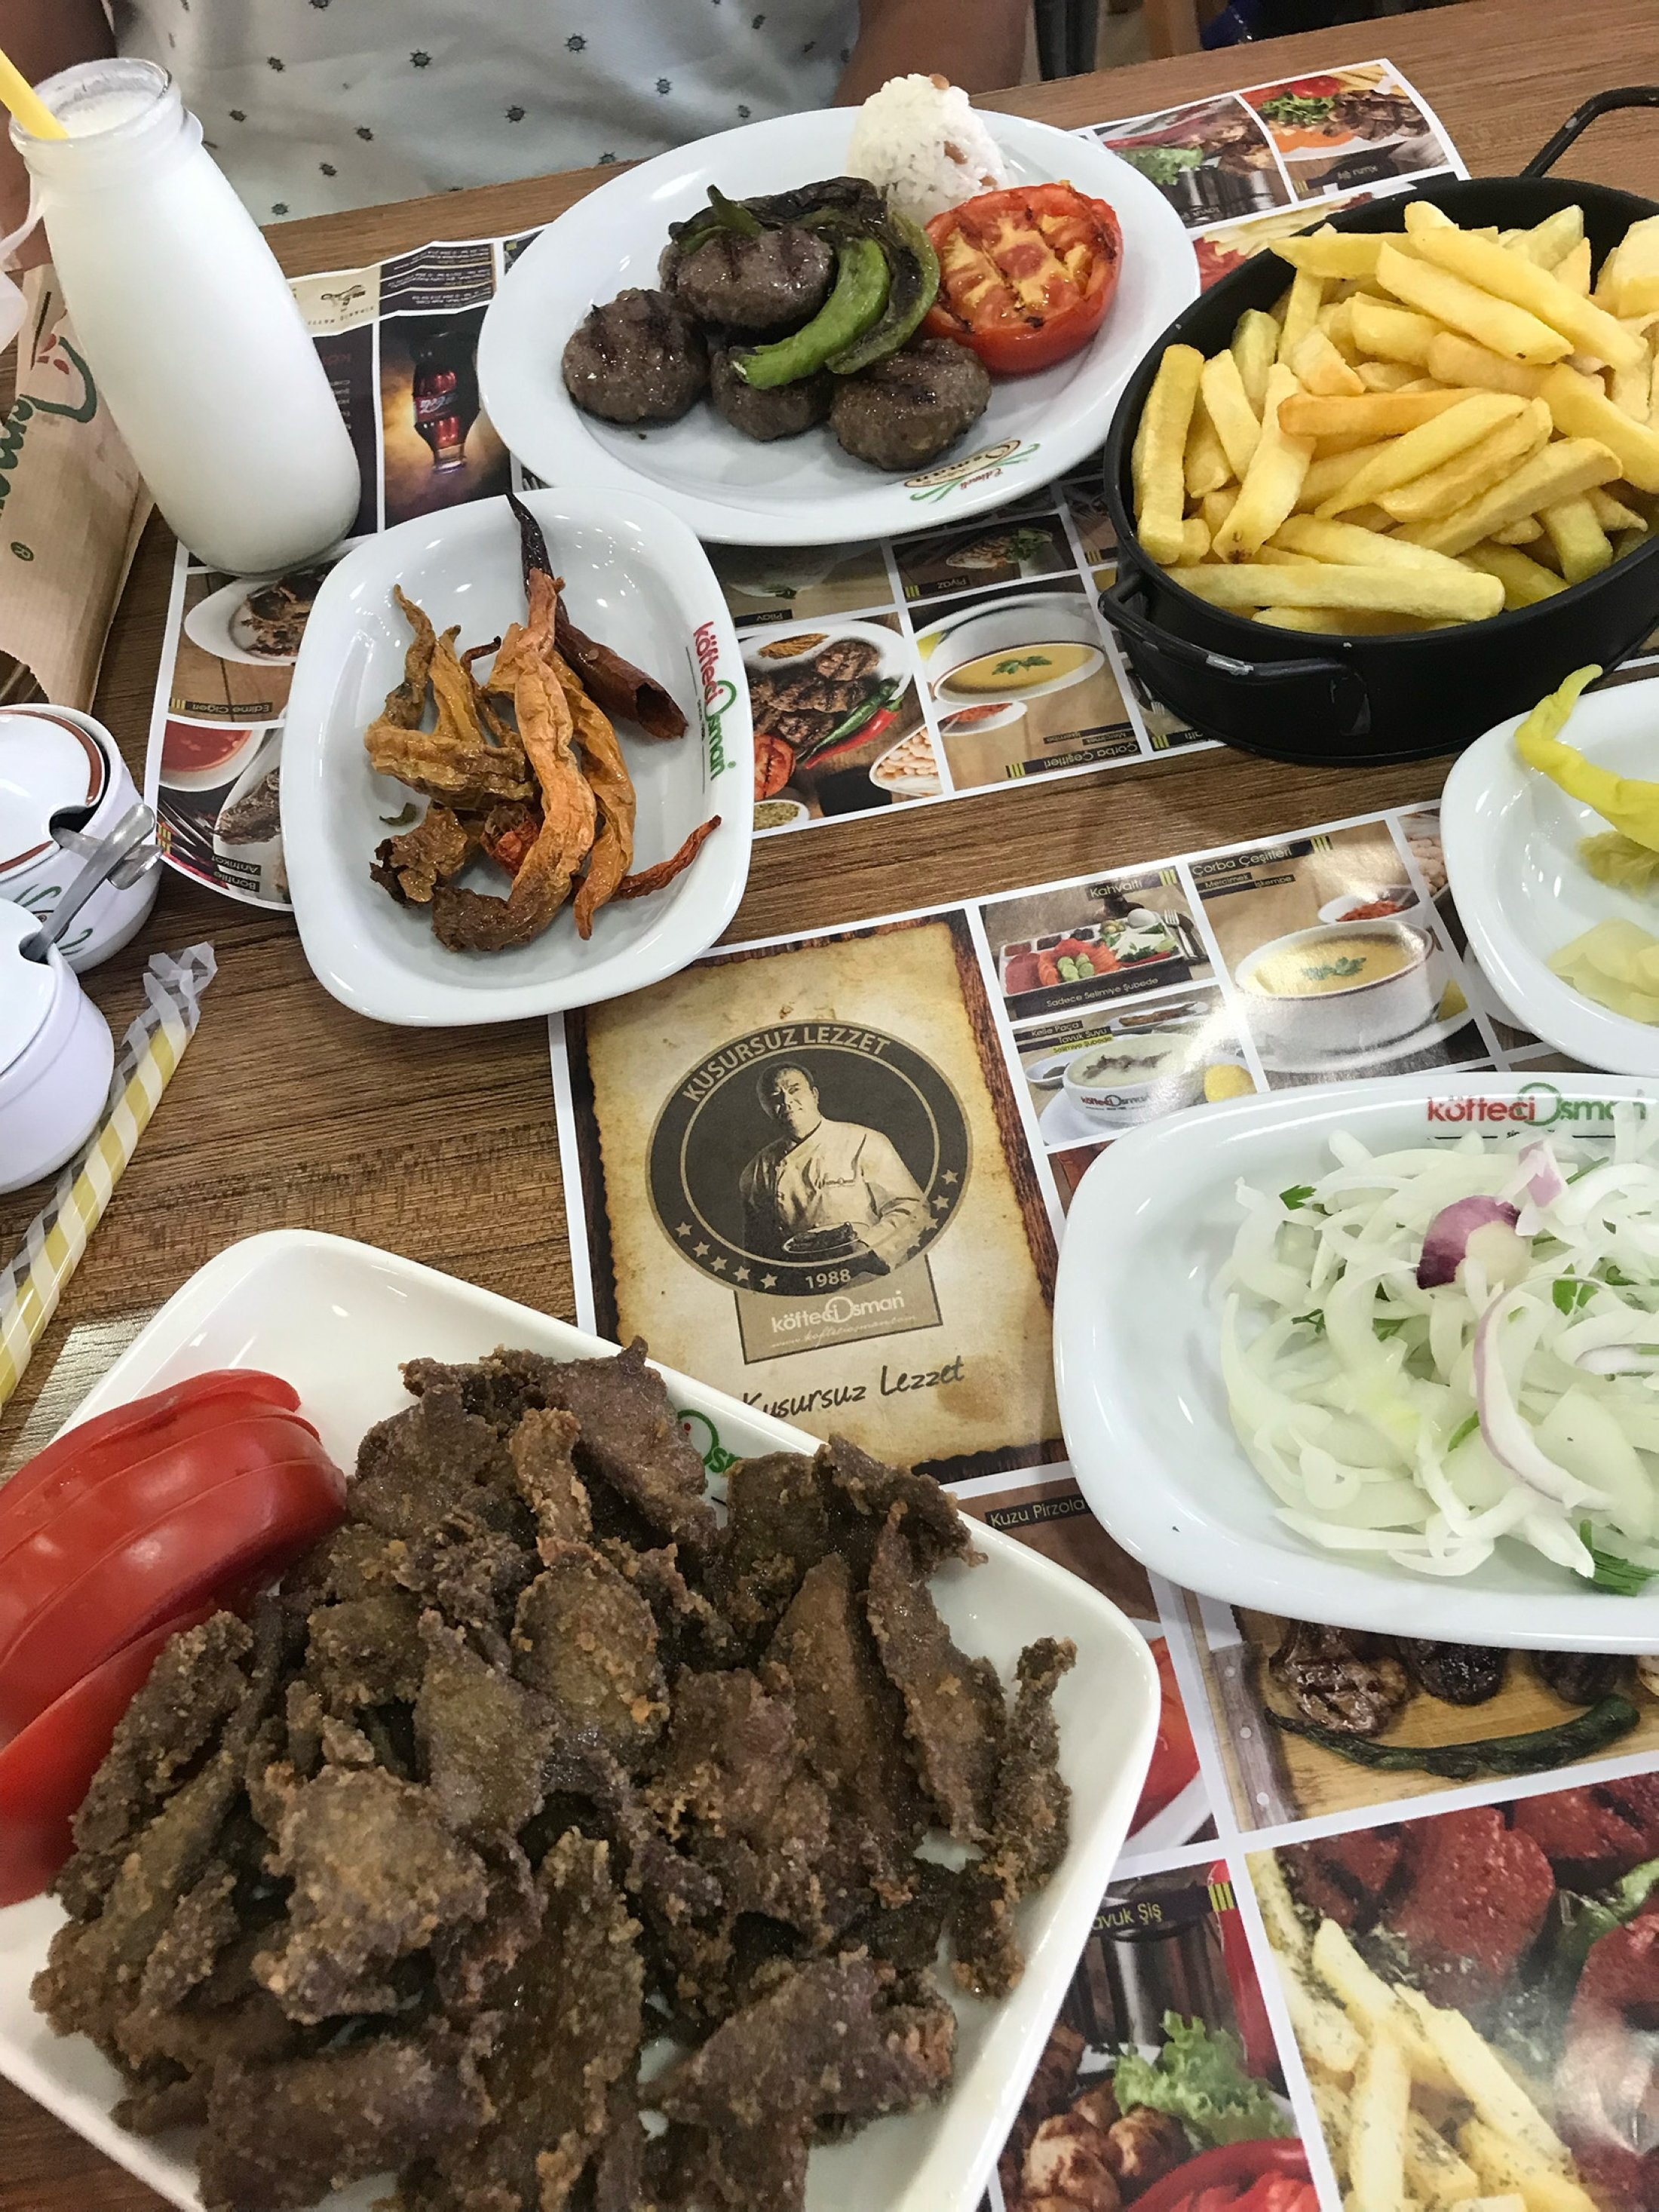 Meskipun Edirne memiliki banyak rasa yang berbeda, masakan yang paling populer adalah hati Edirne.  (Foto oleh zge engelen)